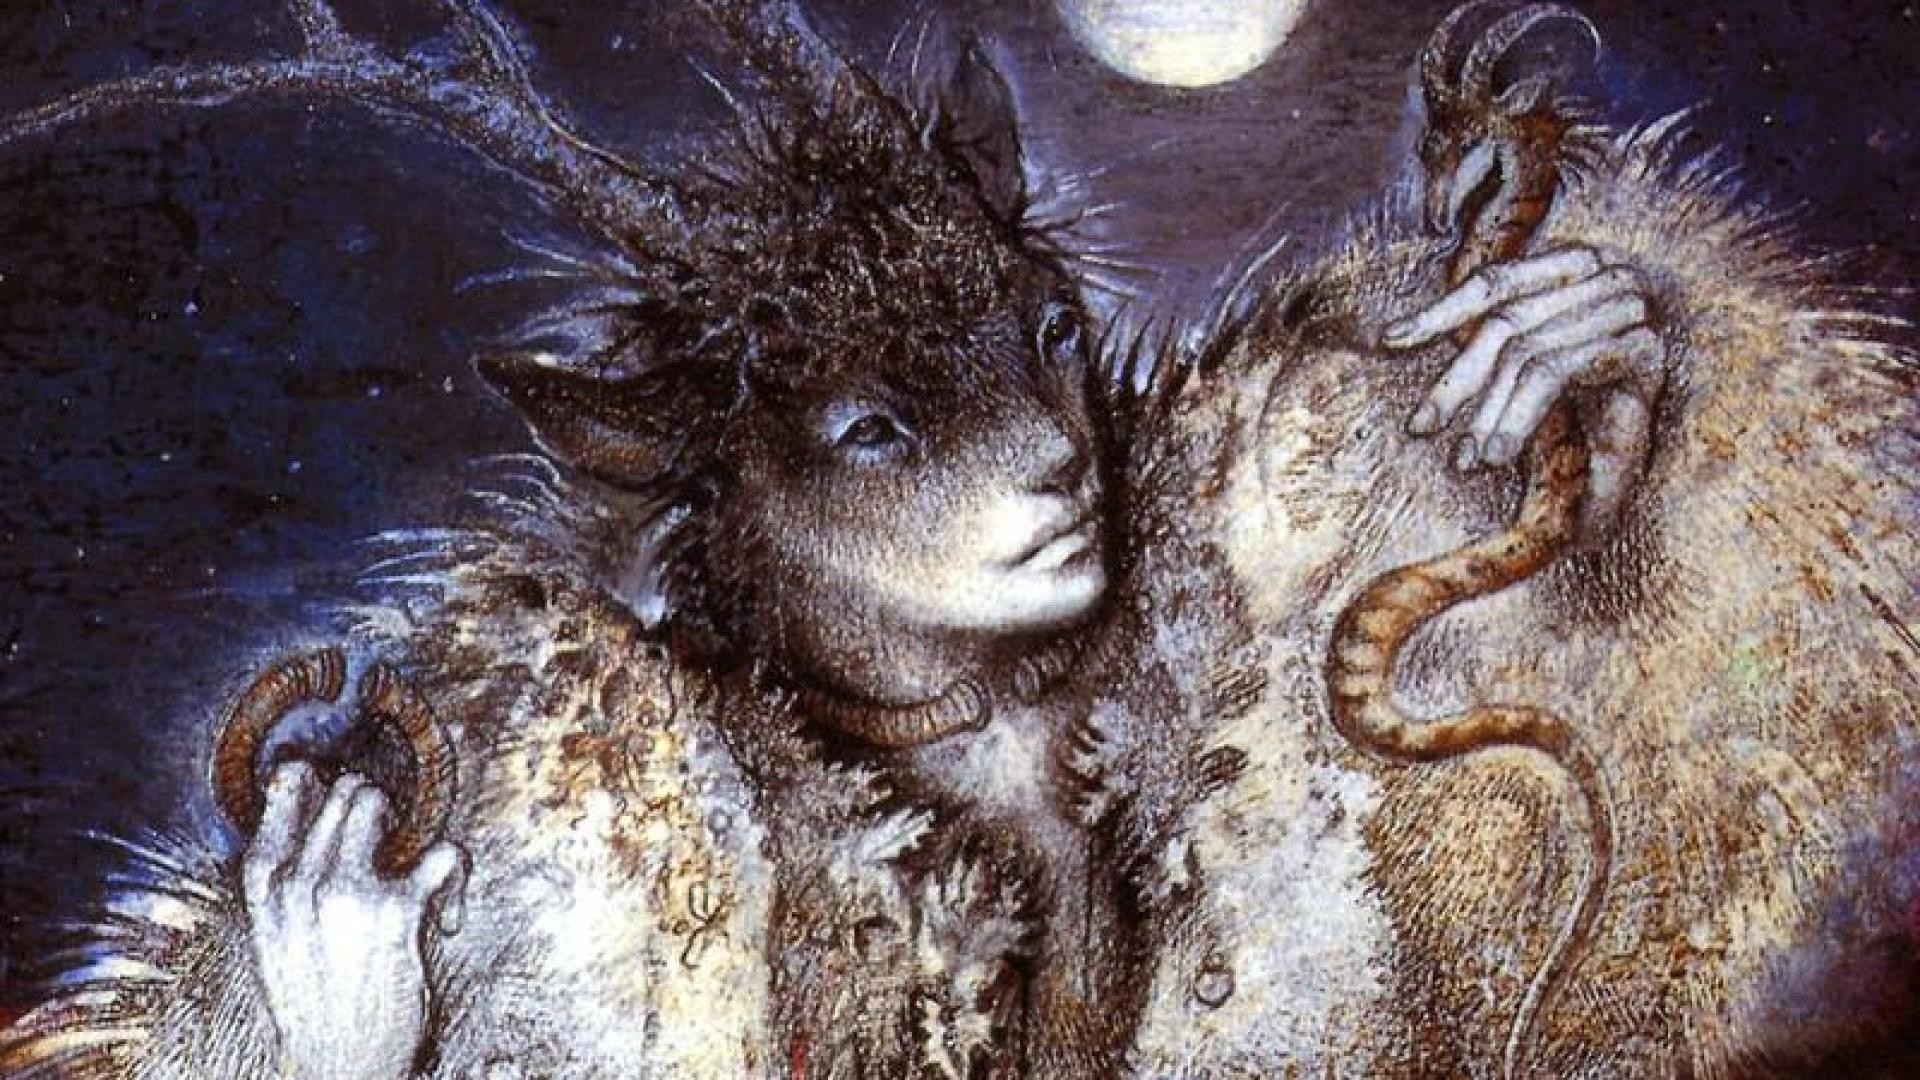 pagan wallpaper,mythology,fictional character